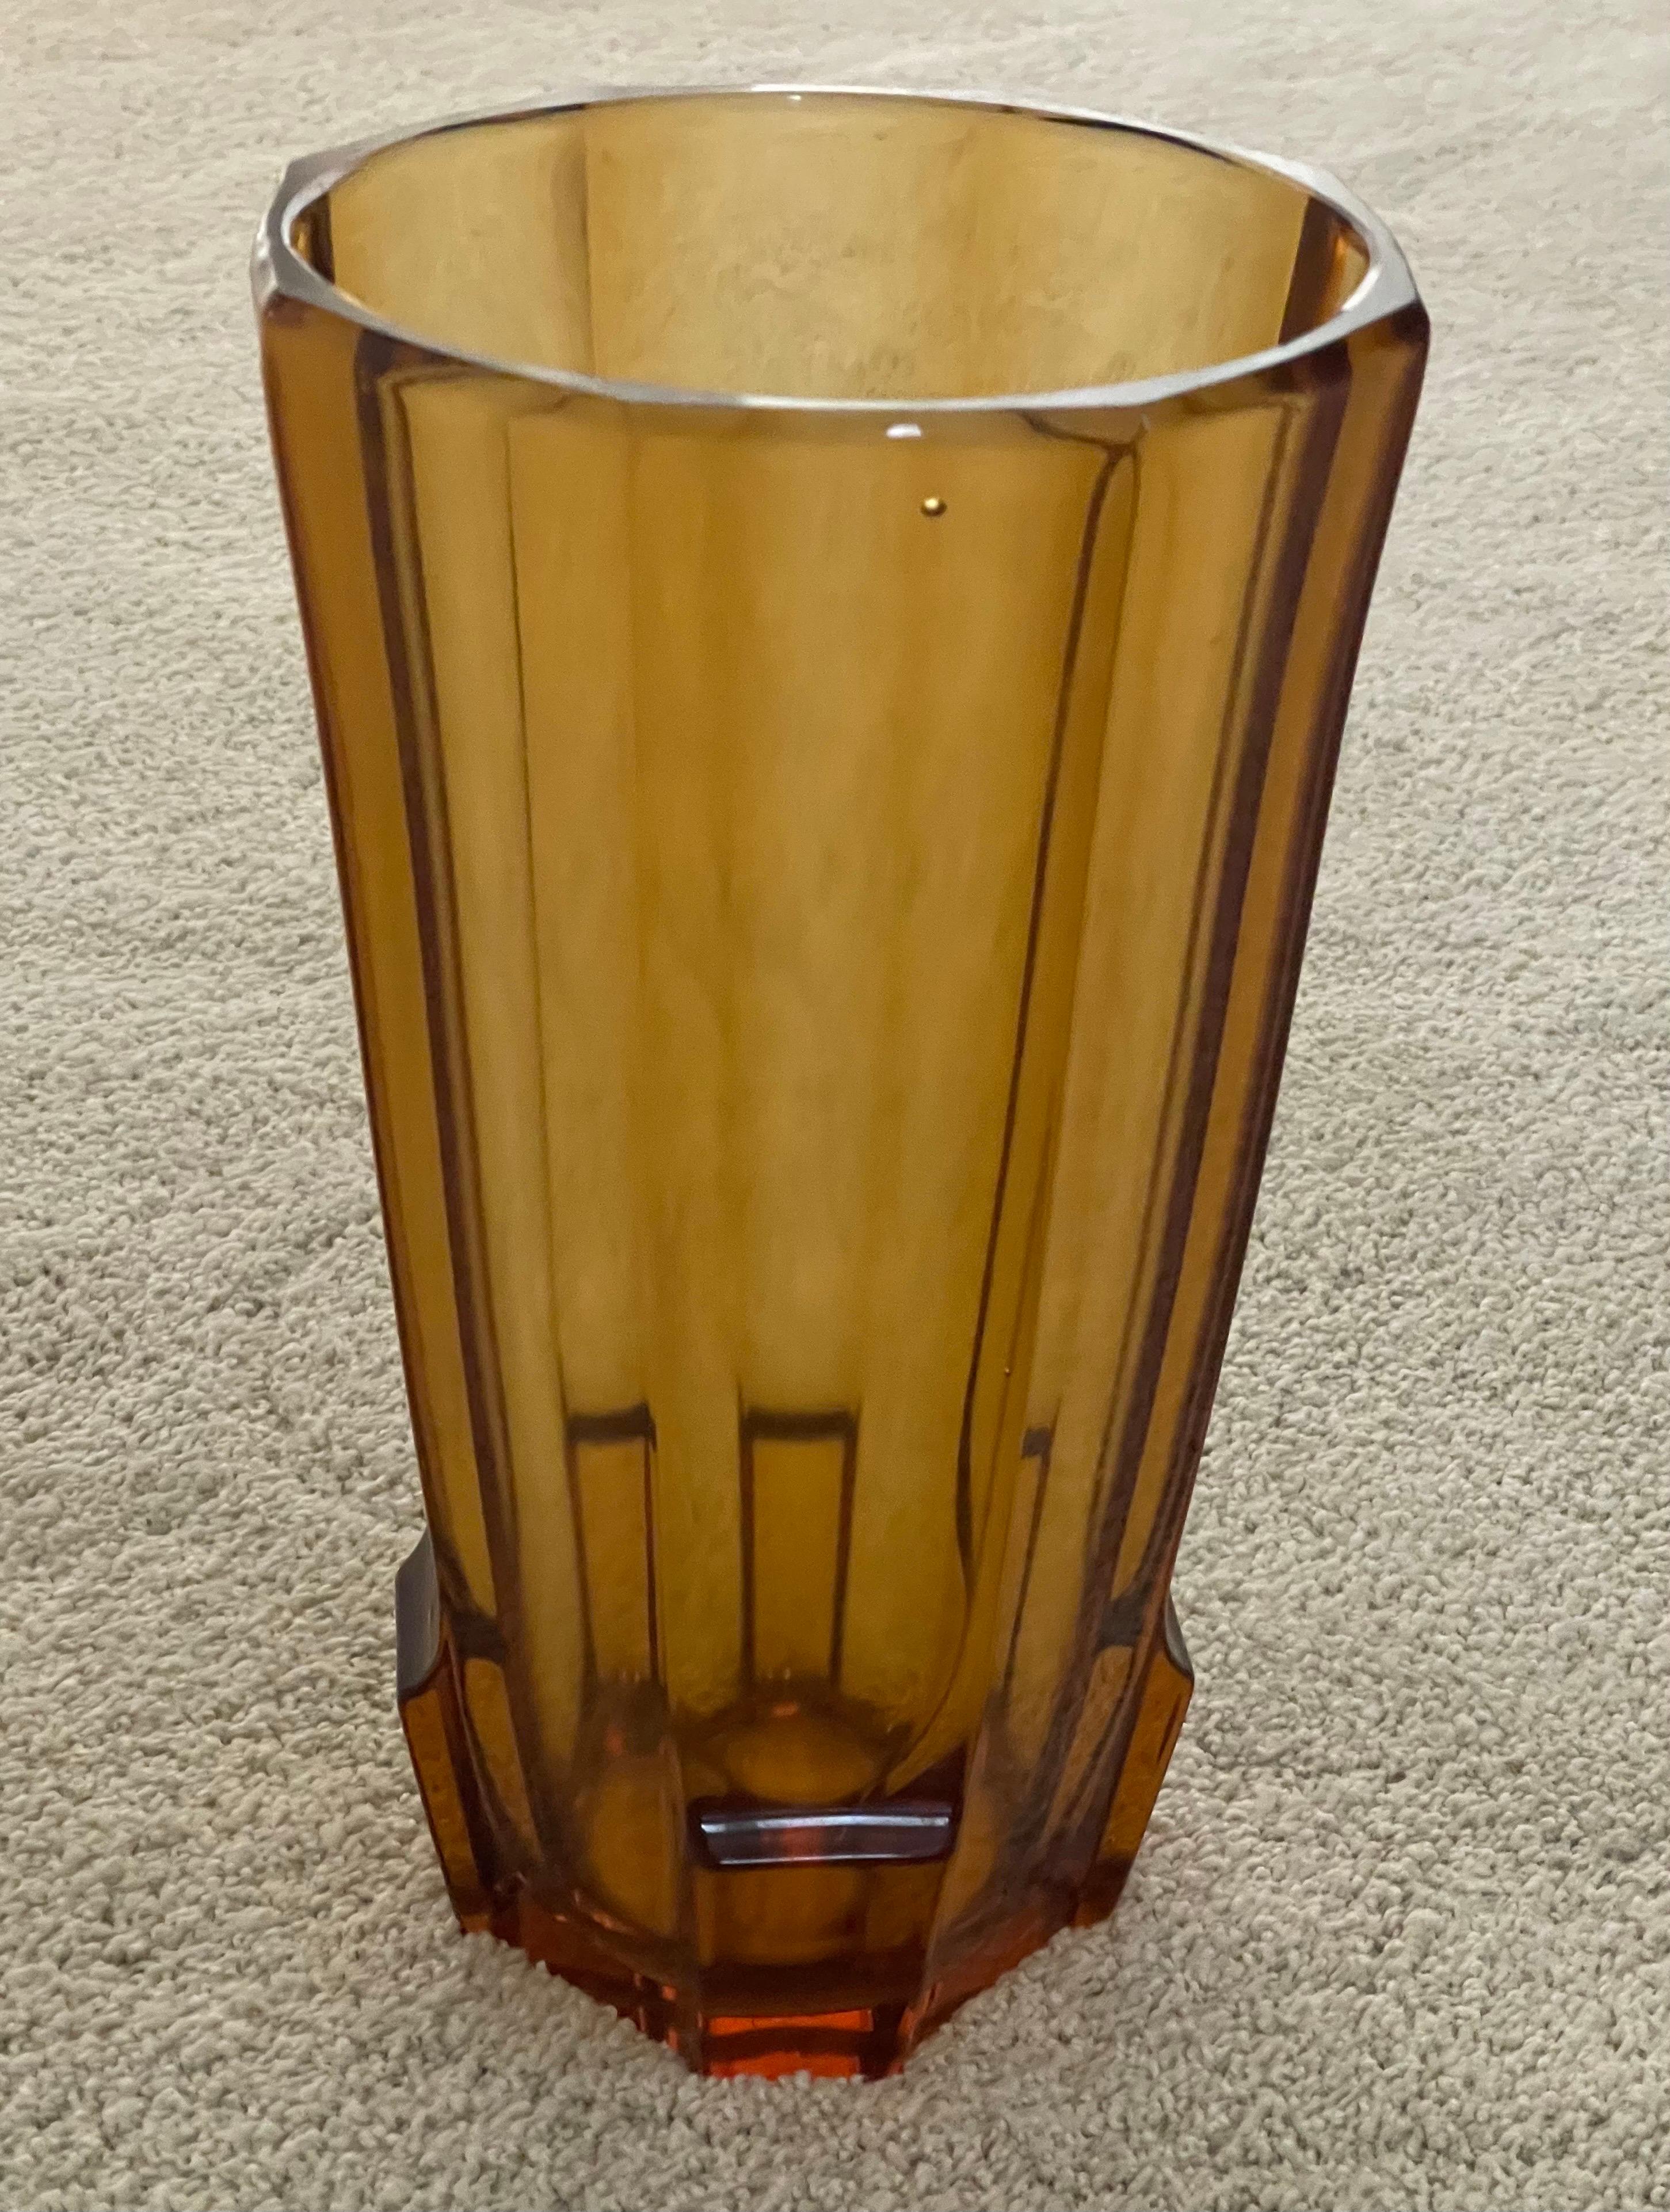 Große bernsteinfarbene Vase aus facettiertem Kunstglas von Josef Hoffmann für Moser Glassworks, ca. 1930er Jahre. Das Stück ist in sehr gutem Vintage-Zustand ohne Chips oder Risse (es gibt ein paar kleine Luftblasen in dem Stück) und misst 6,5 